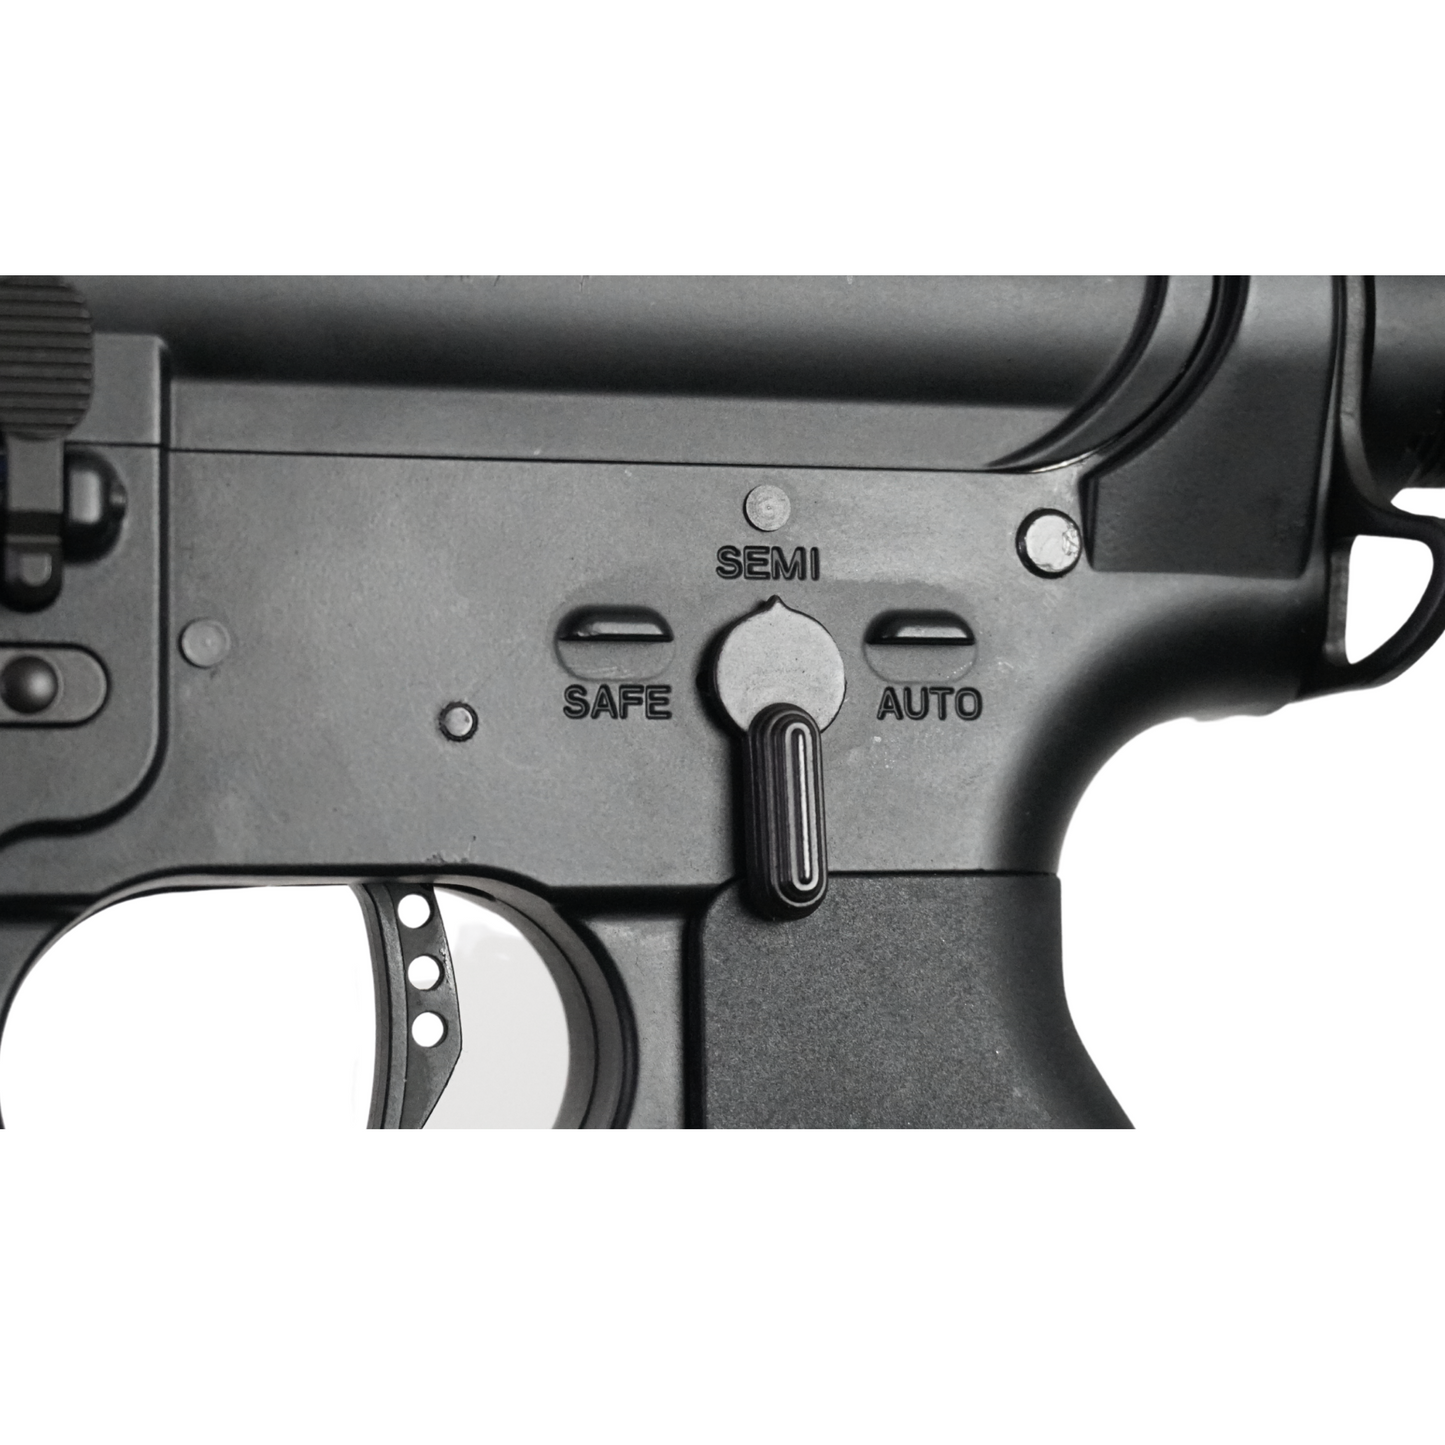 Tactical M4 GBU Custom - Gel Blaster (Metal)